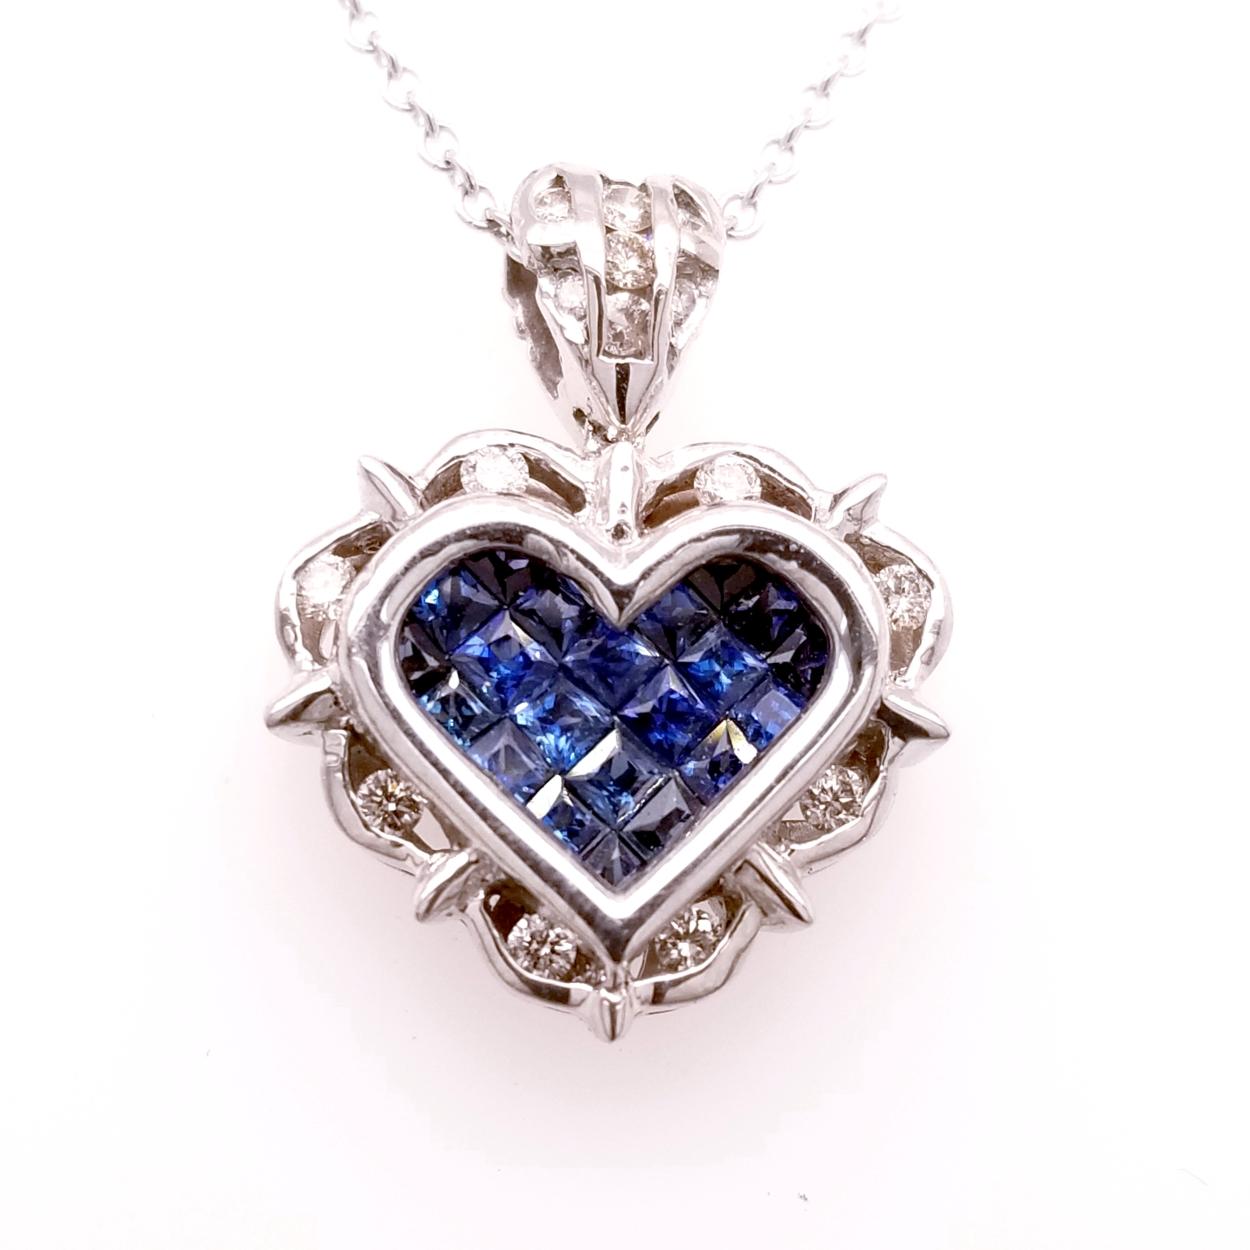 pendentif en or 18 carats en forme de coeur avec 21 saphirs bleus taille princesse sertis de manière invisible (poids total de la gemme 0,80 ct) entourés d'un halo de diamants sertis en canal et d'une bale sertie de diamants avec un poids total de